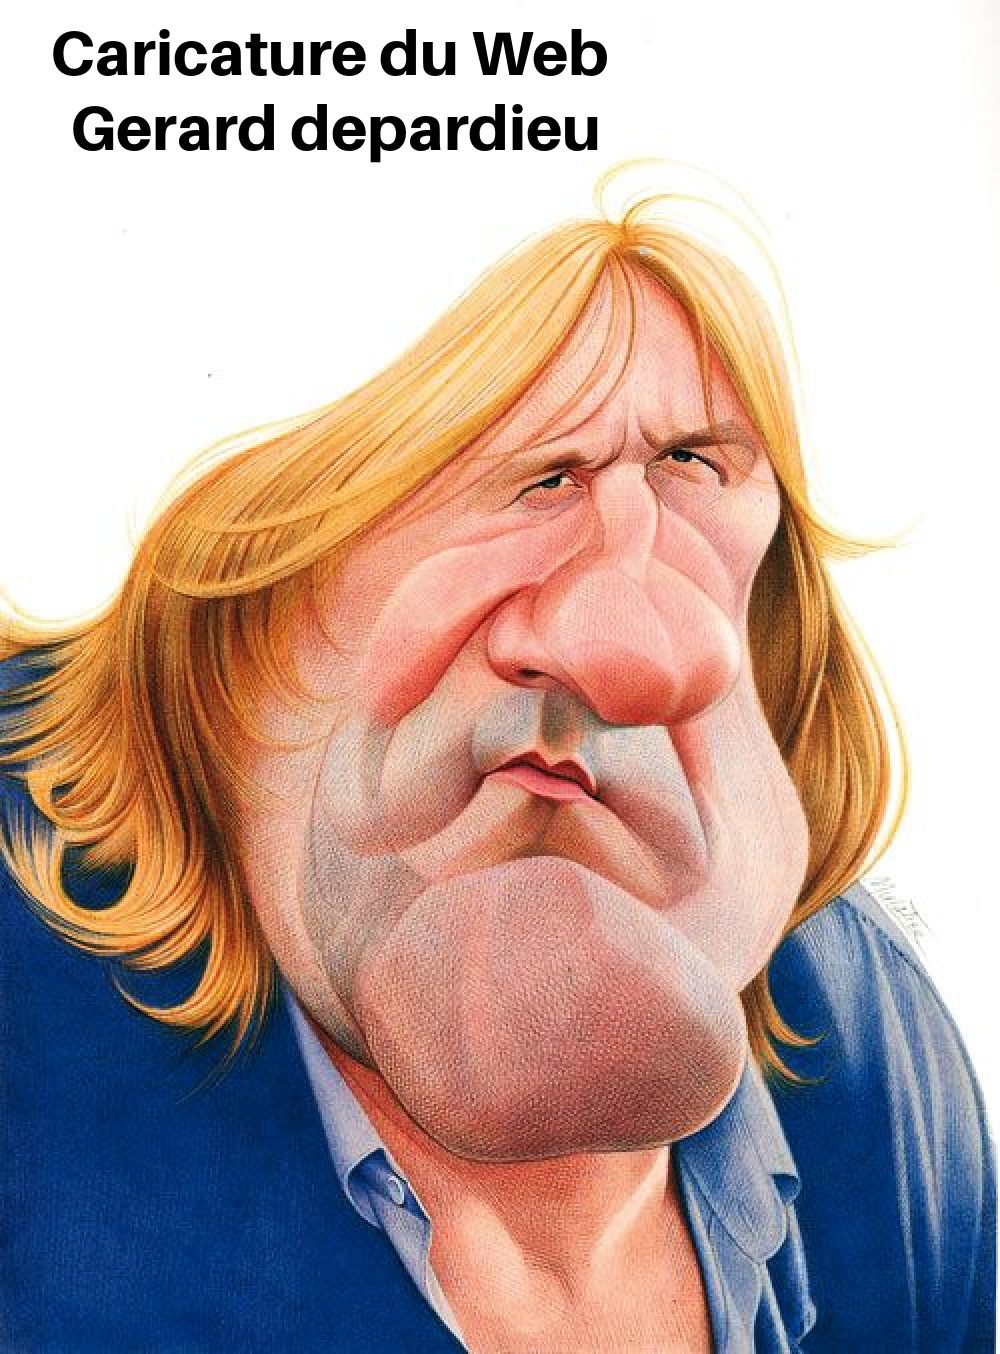 AW29. Portrait - Gerard Depardieu Caricature du Web